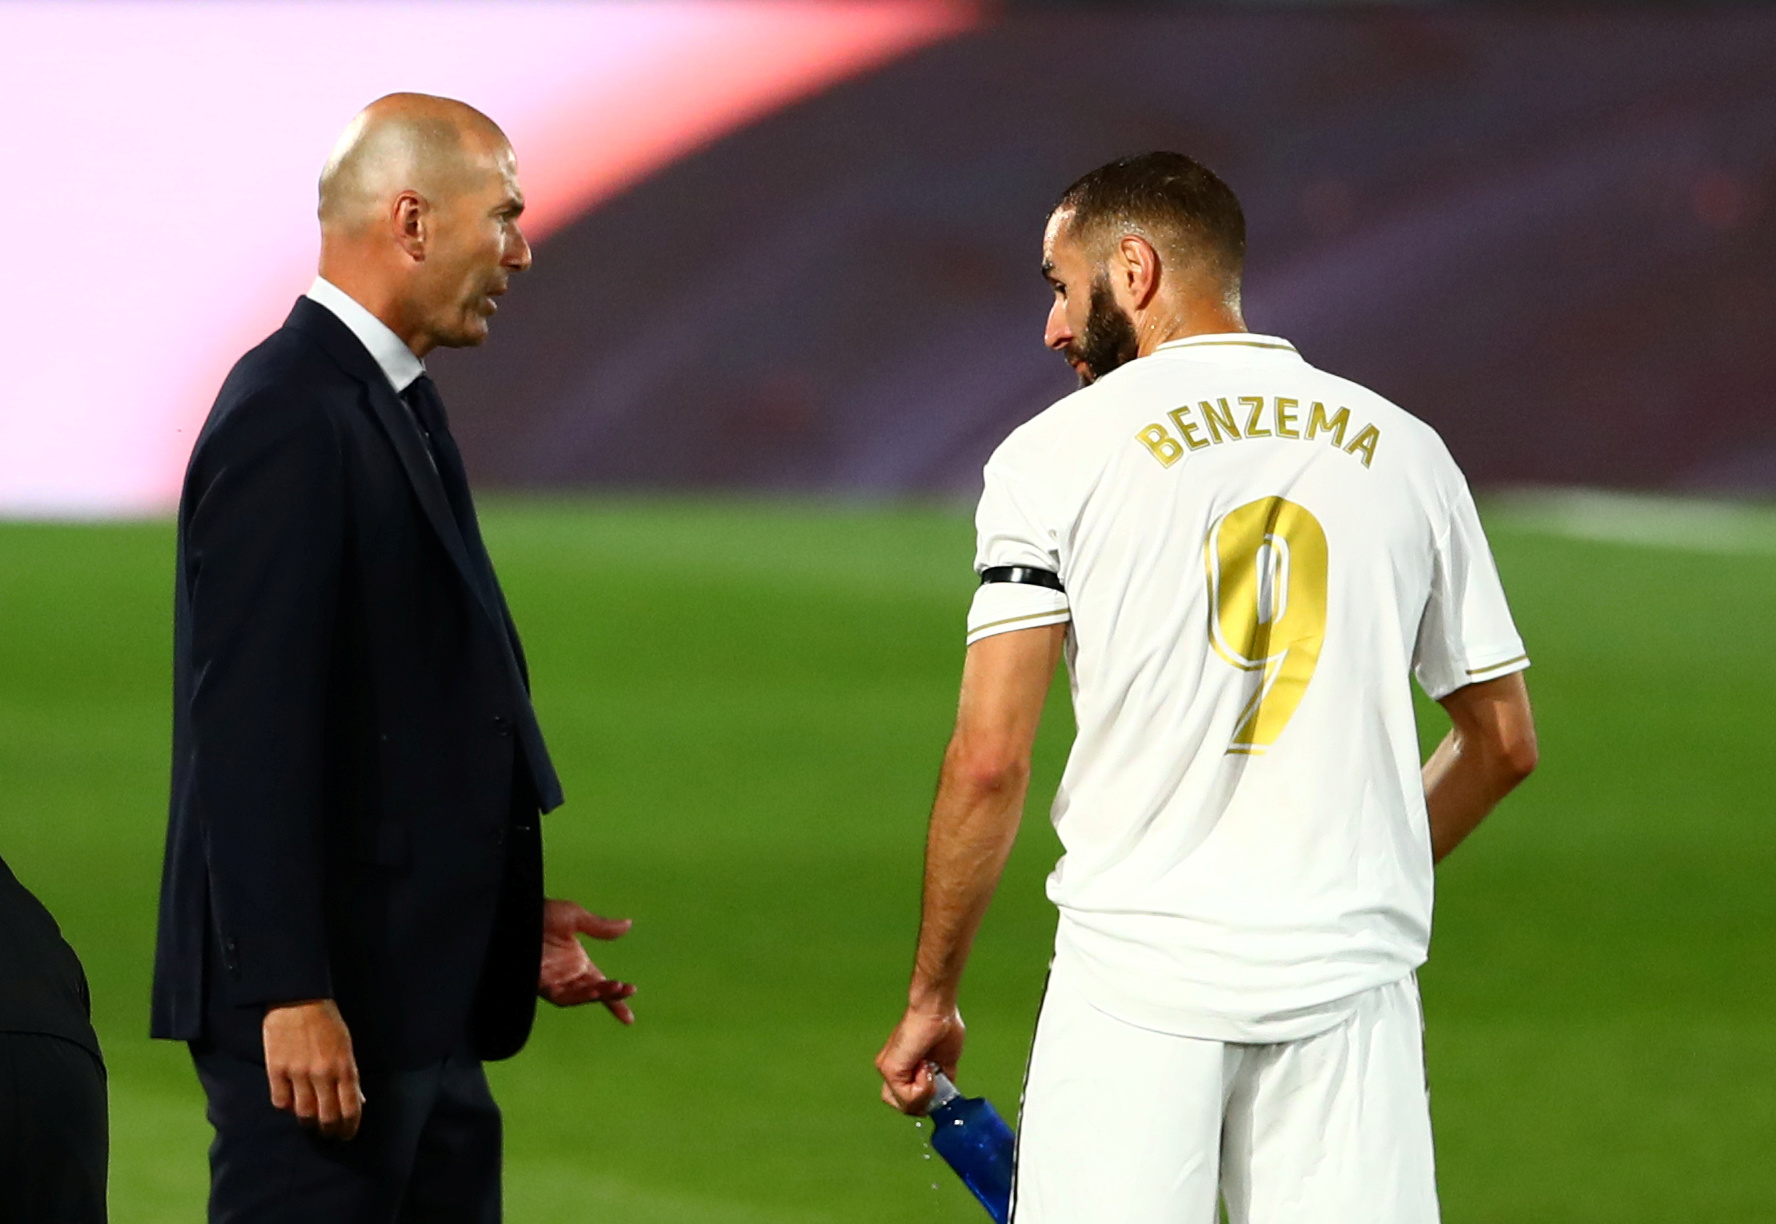 Affaire de la sextape : «Je soutiens Benzema» répète Zidane